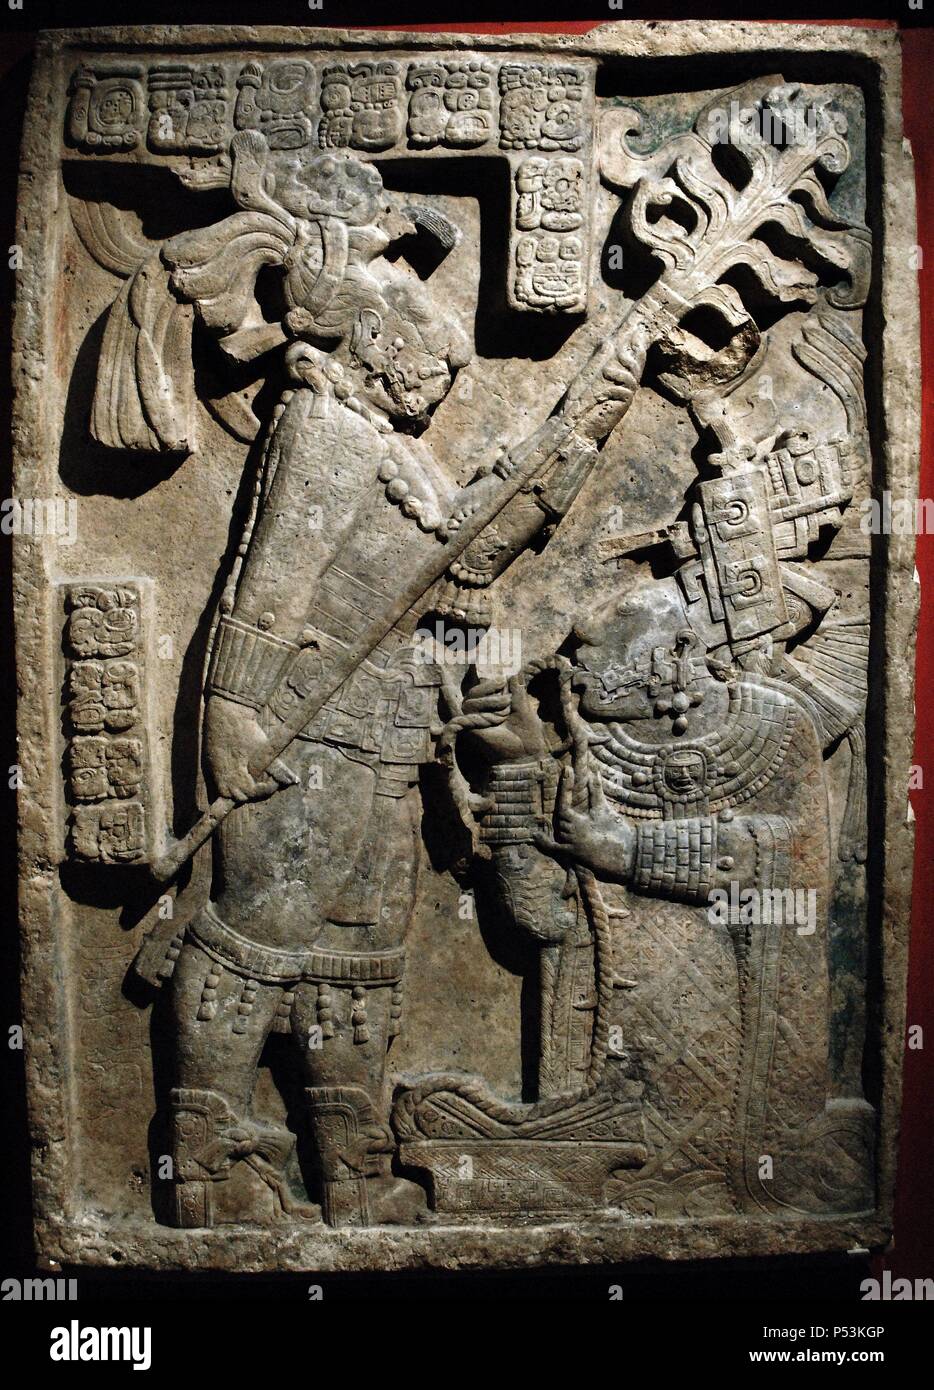 ARTE MAYA. PERIODO CLASICO TARDIO (600-900 d. C.). DINTEL 24 DE YAXCHILAN (h. 709 d. C.). Relieve de piedra caliza con restos de pigmento azul y rojo que representa un AUTOSACRIFICIO DE SANGRE REALIZADO POR EL REY ESCUDO JAGUAR II Y SU ESPOSA K'AB'AL XOOK. El último glifo representa el emblema de Yaxchilán. Pertenece al grupo de tres relieves encargados por Escudo Jaguar II para la ESTRUCTURA 23 de Yaxchilán. Estado de Chiapas. México. Museo Británico. Londres. Inglaterra. Reino Unido. Stock Photo